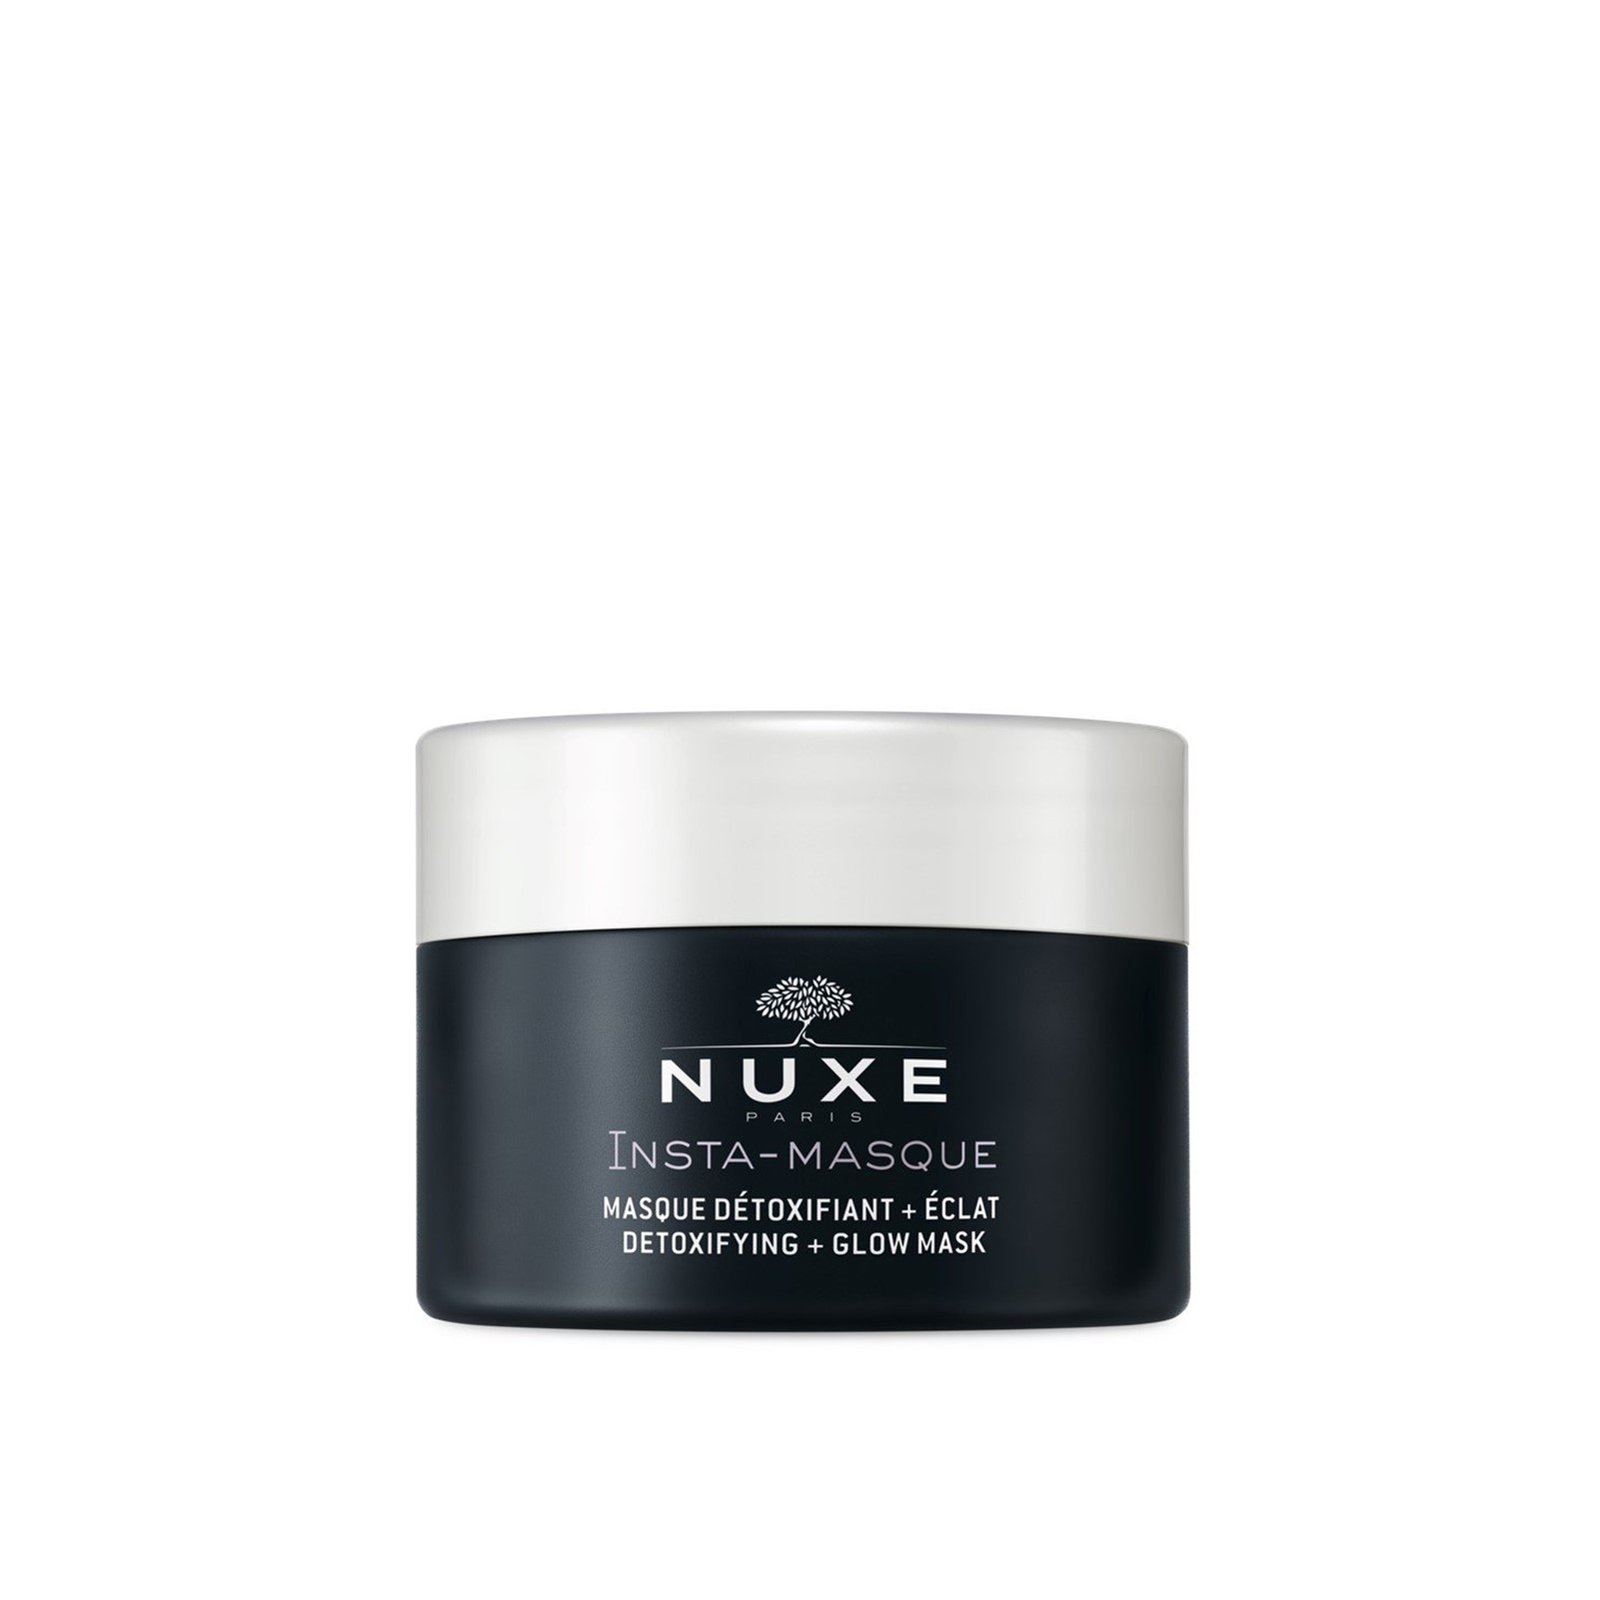 NUXE Insta-Masque Detoxifying + Glow Mask 50ml (1.69fl oz)